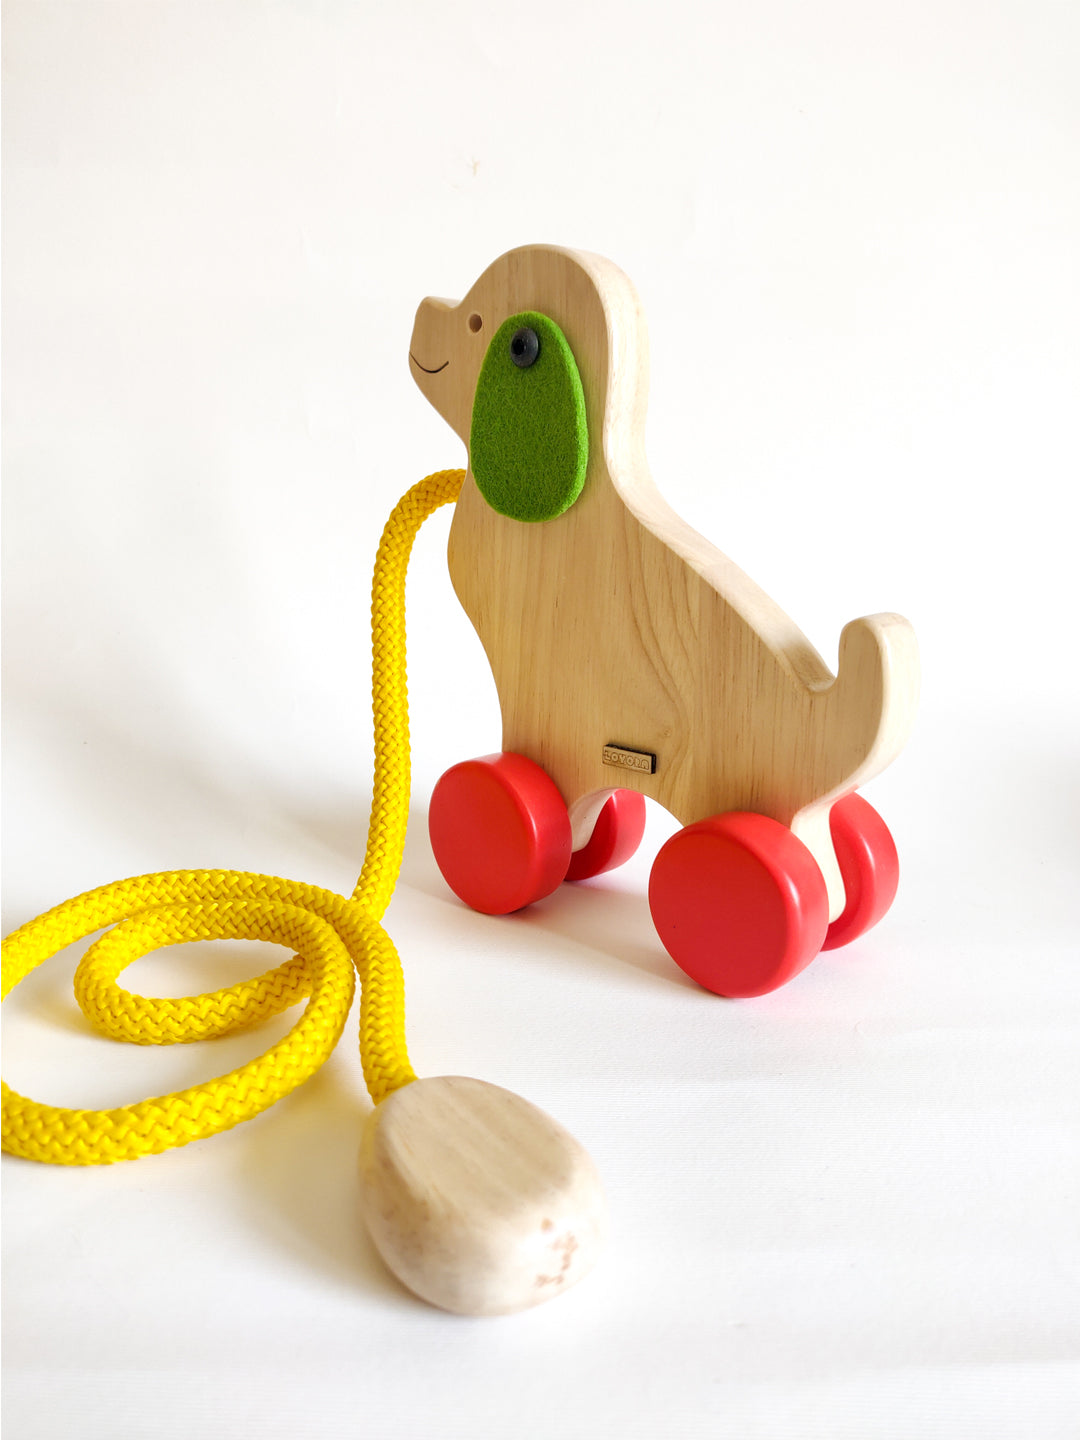 SNOOPIE, the pull toy